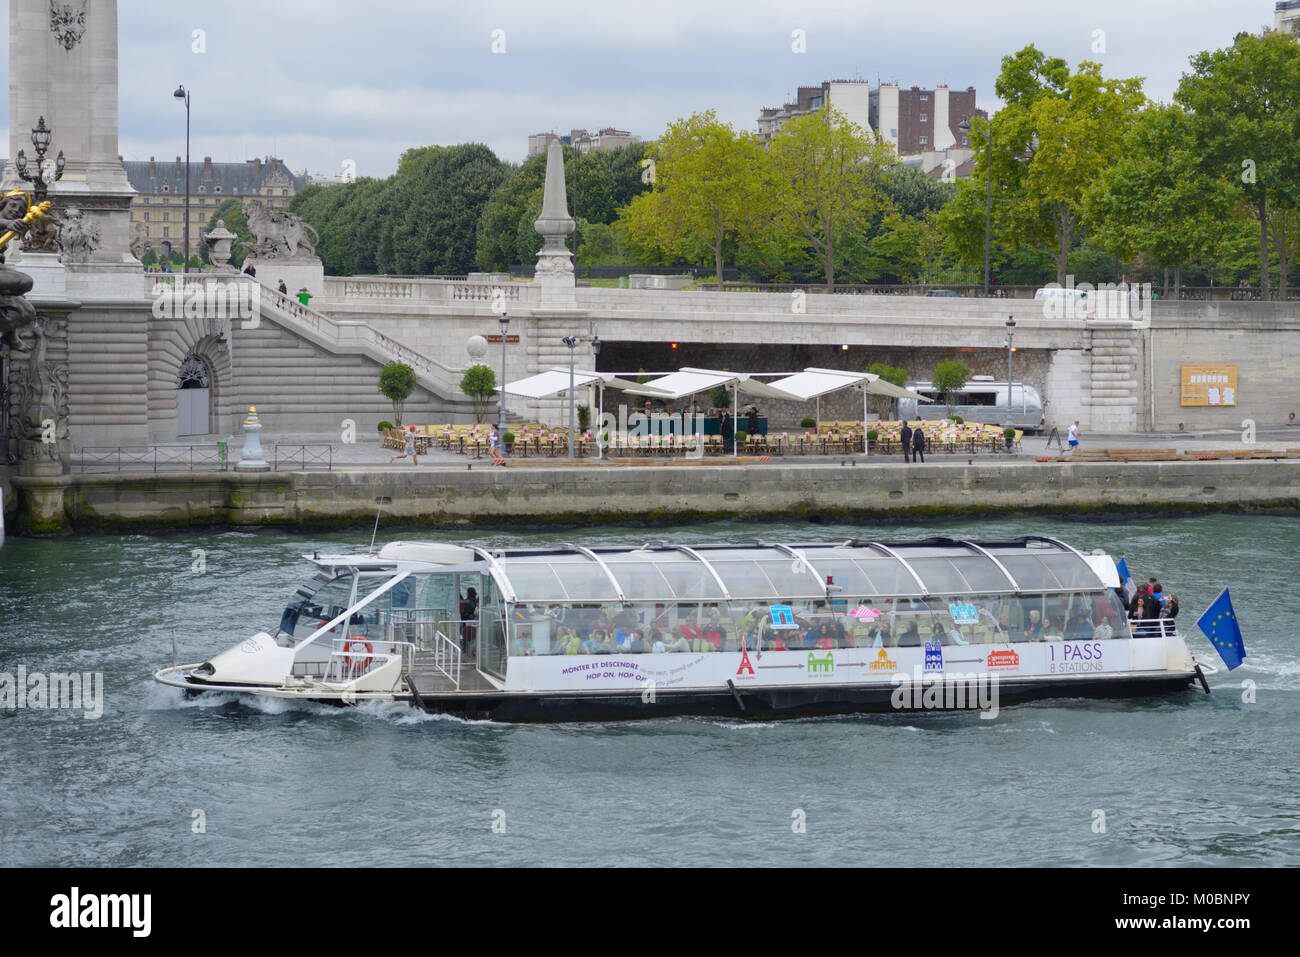 Paris, Frankreich, 12. September, 2013: Die Menschen auf dem Boot, so dass die Tour auf Seine. Flusskreuzfahrten sind die bevorzugten Freizeitbeschäftigung für Tausende o Stockfoto